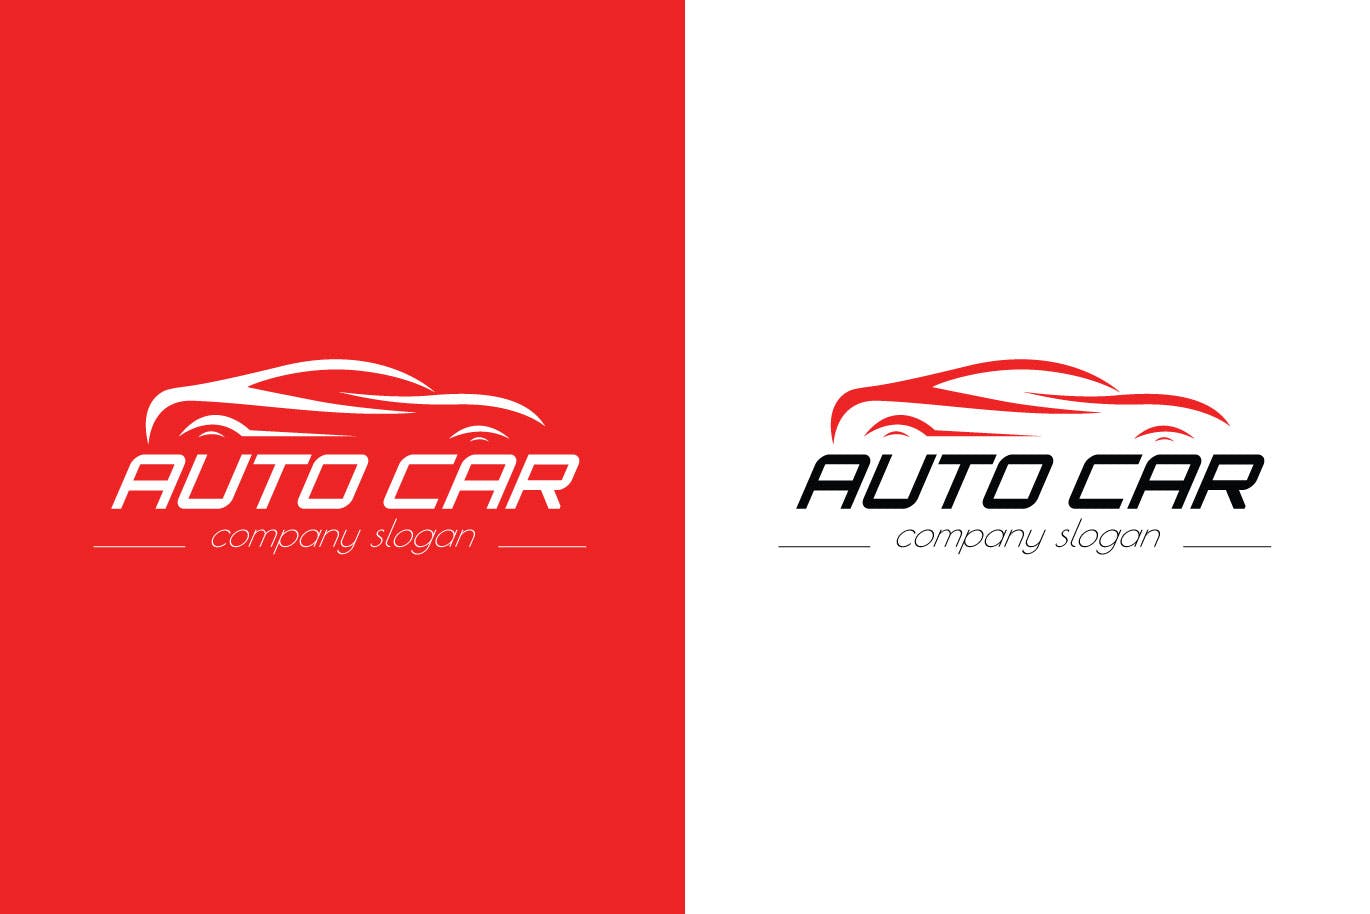 汽车相关企业品牌Logo设计第一素材精选模板 Auto Car Business Logo Template插图(1)